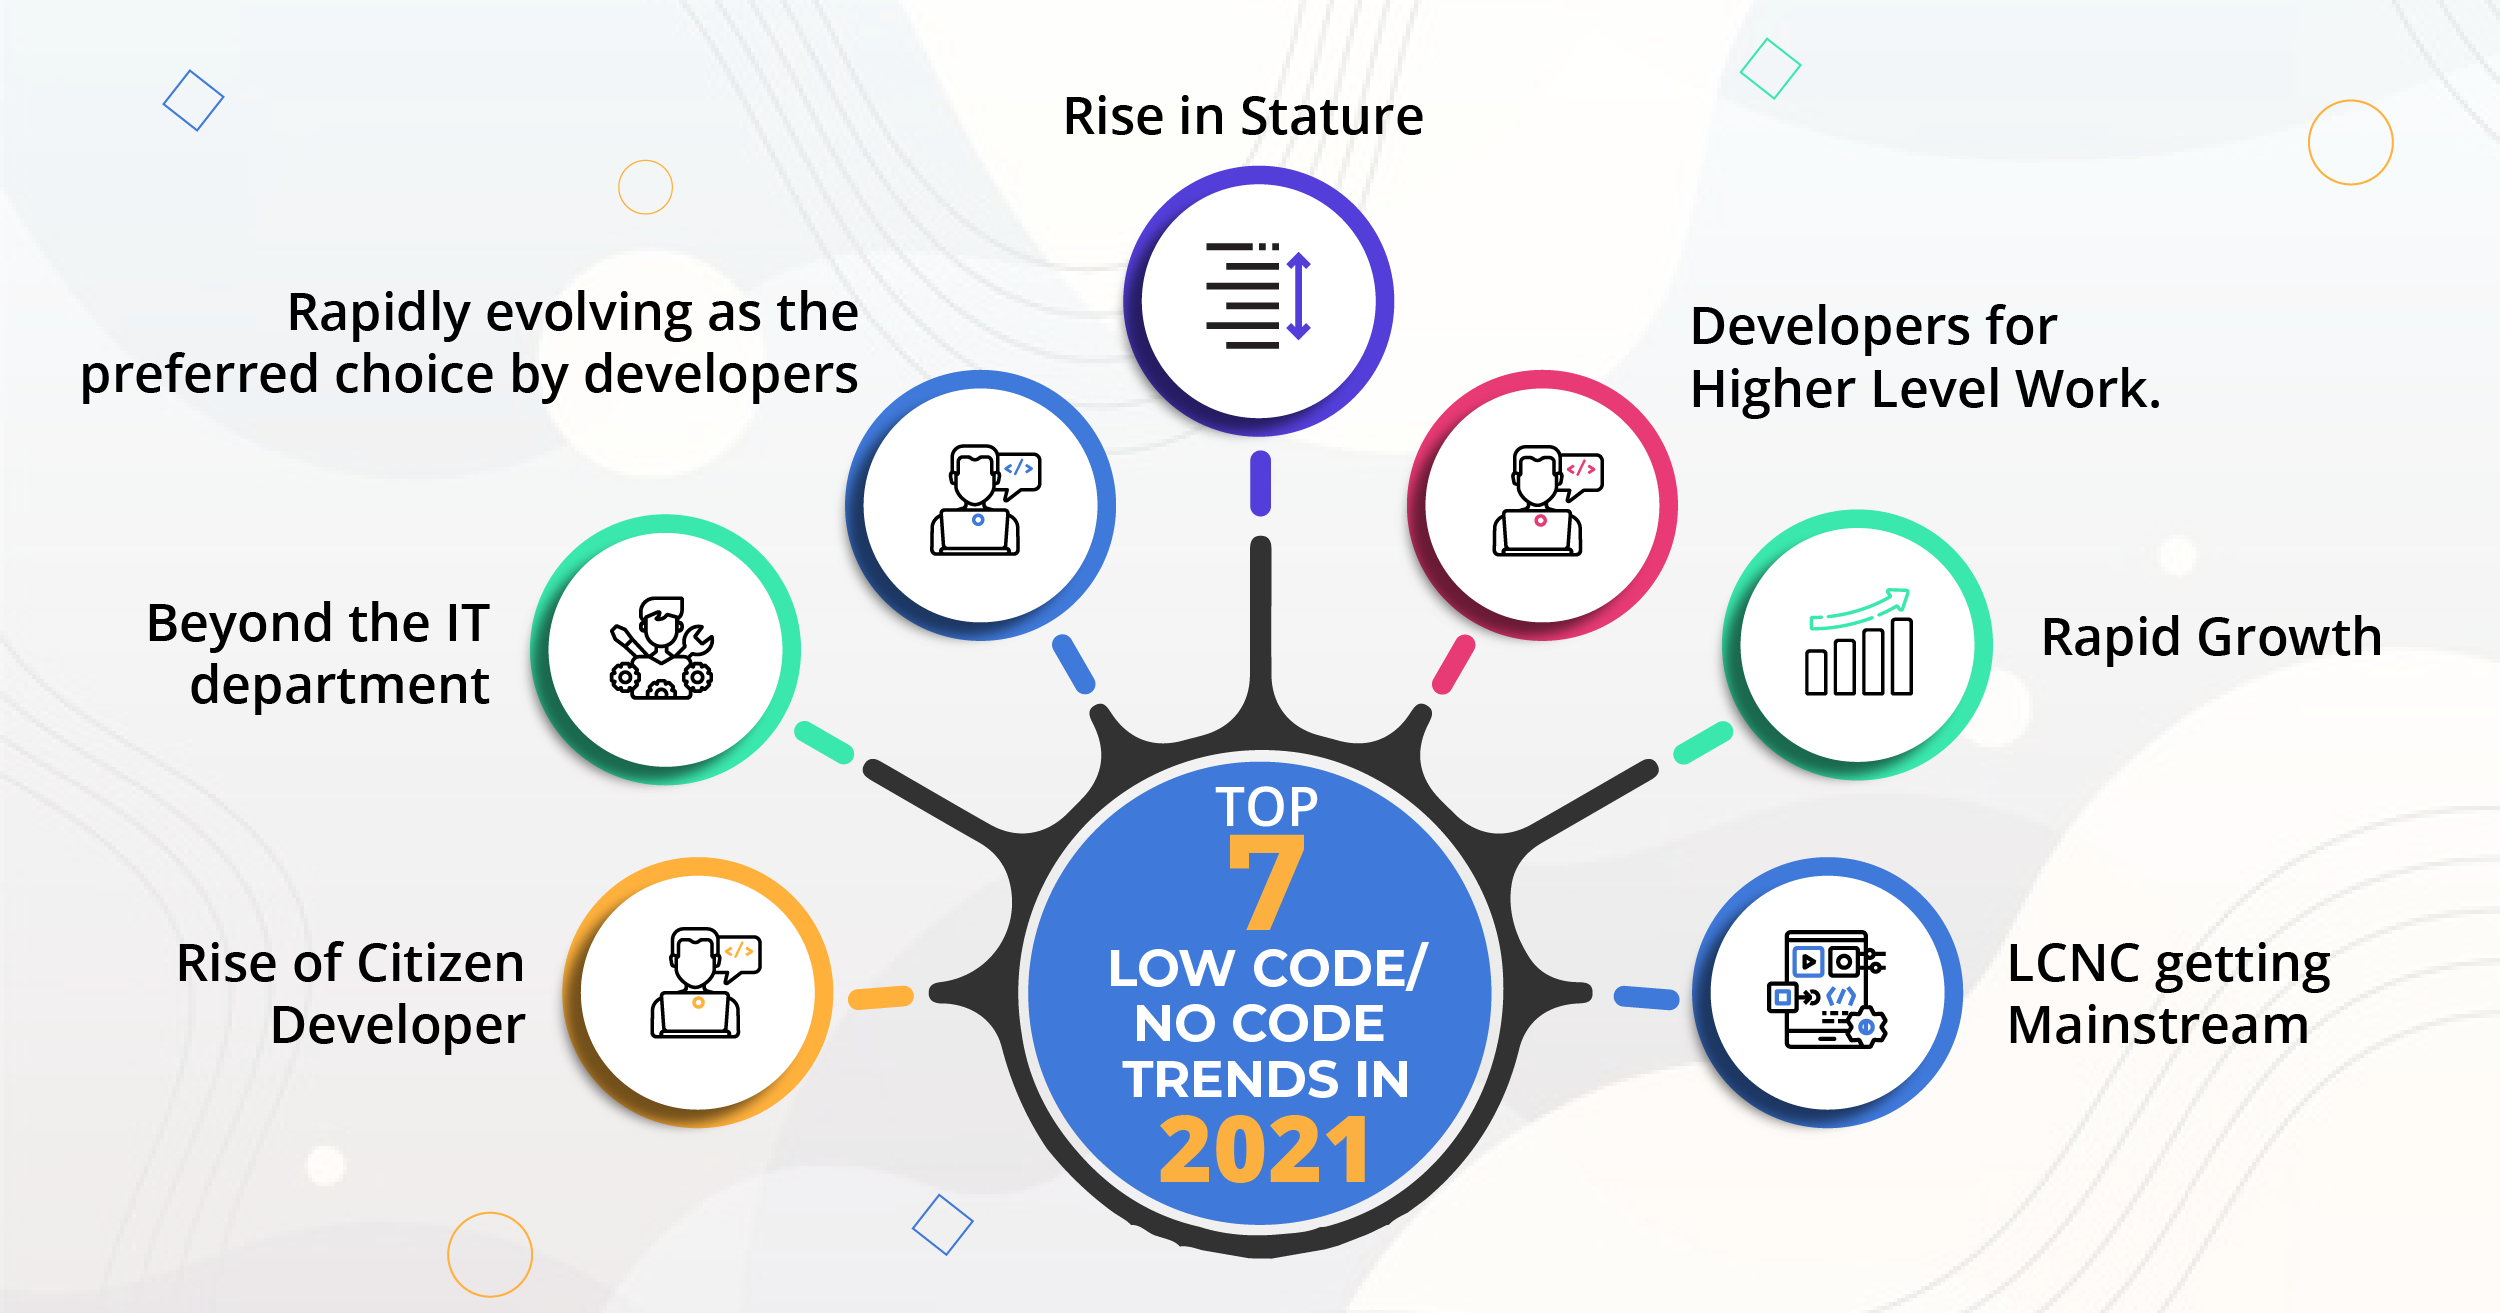 Top 7 Low Code/No Code Trends in 2021 